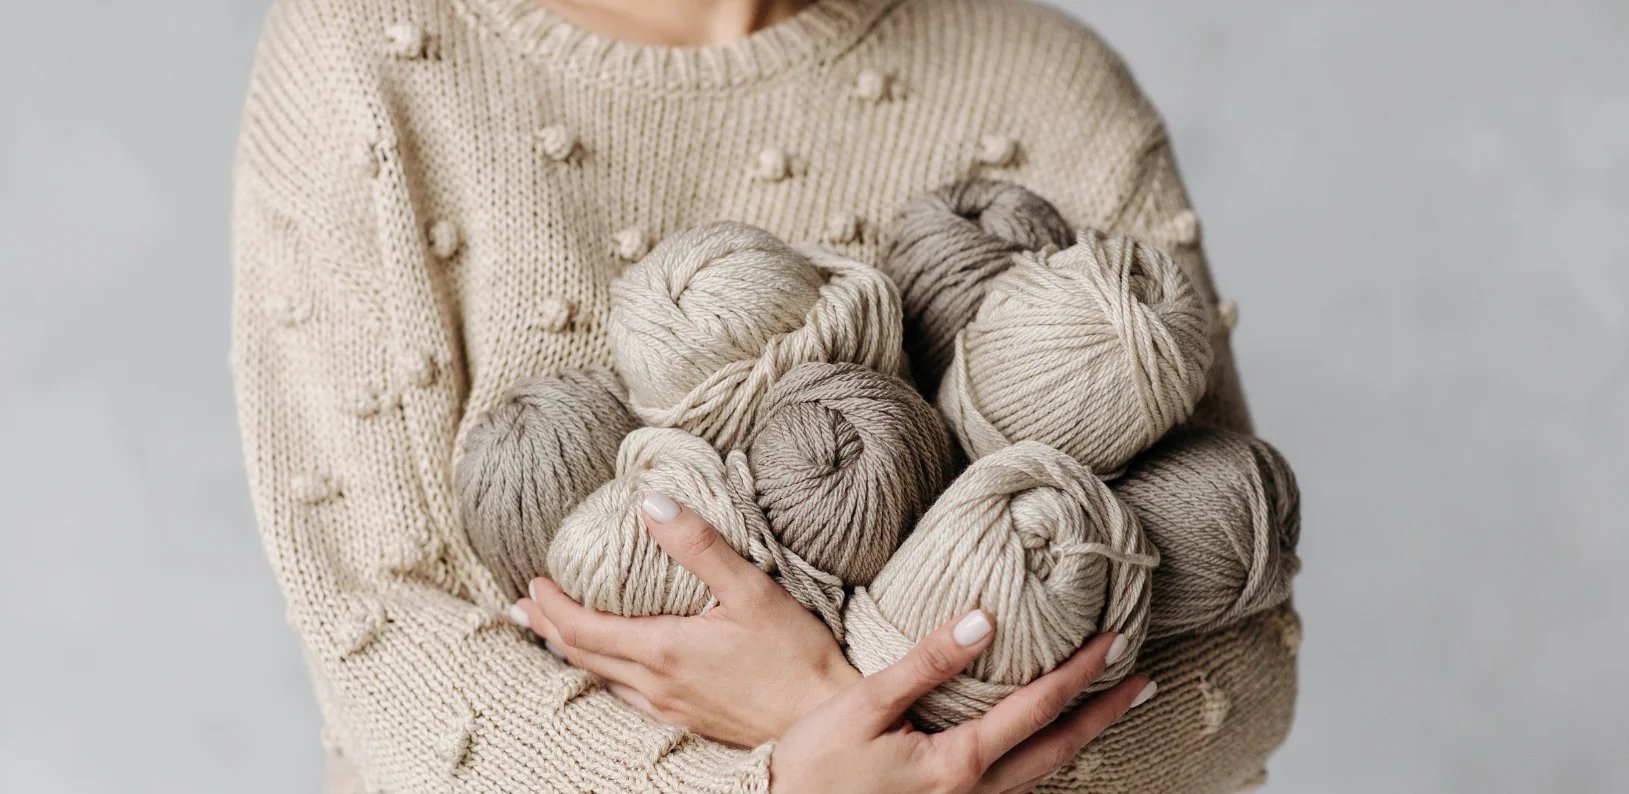 Na imagem, uma mulher segurando vários rolos de linha de crochê para fazer artesanato